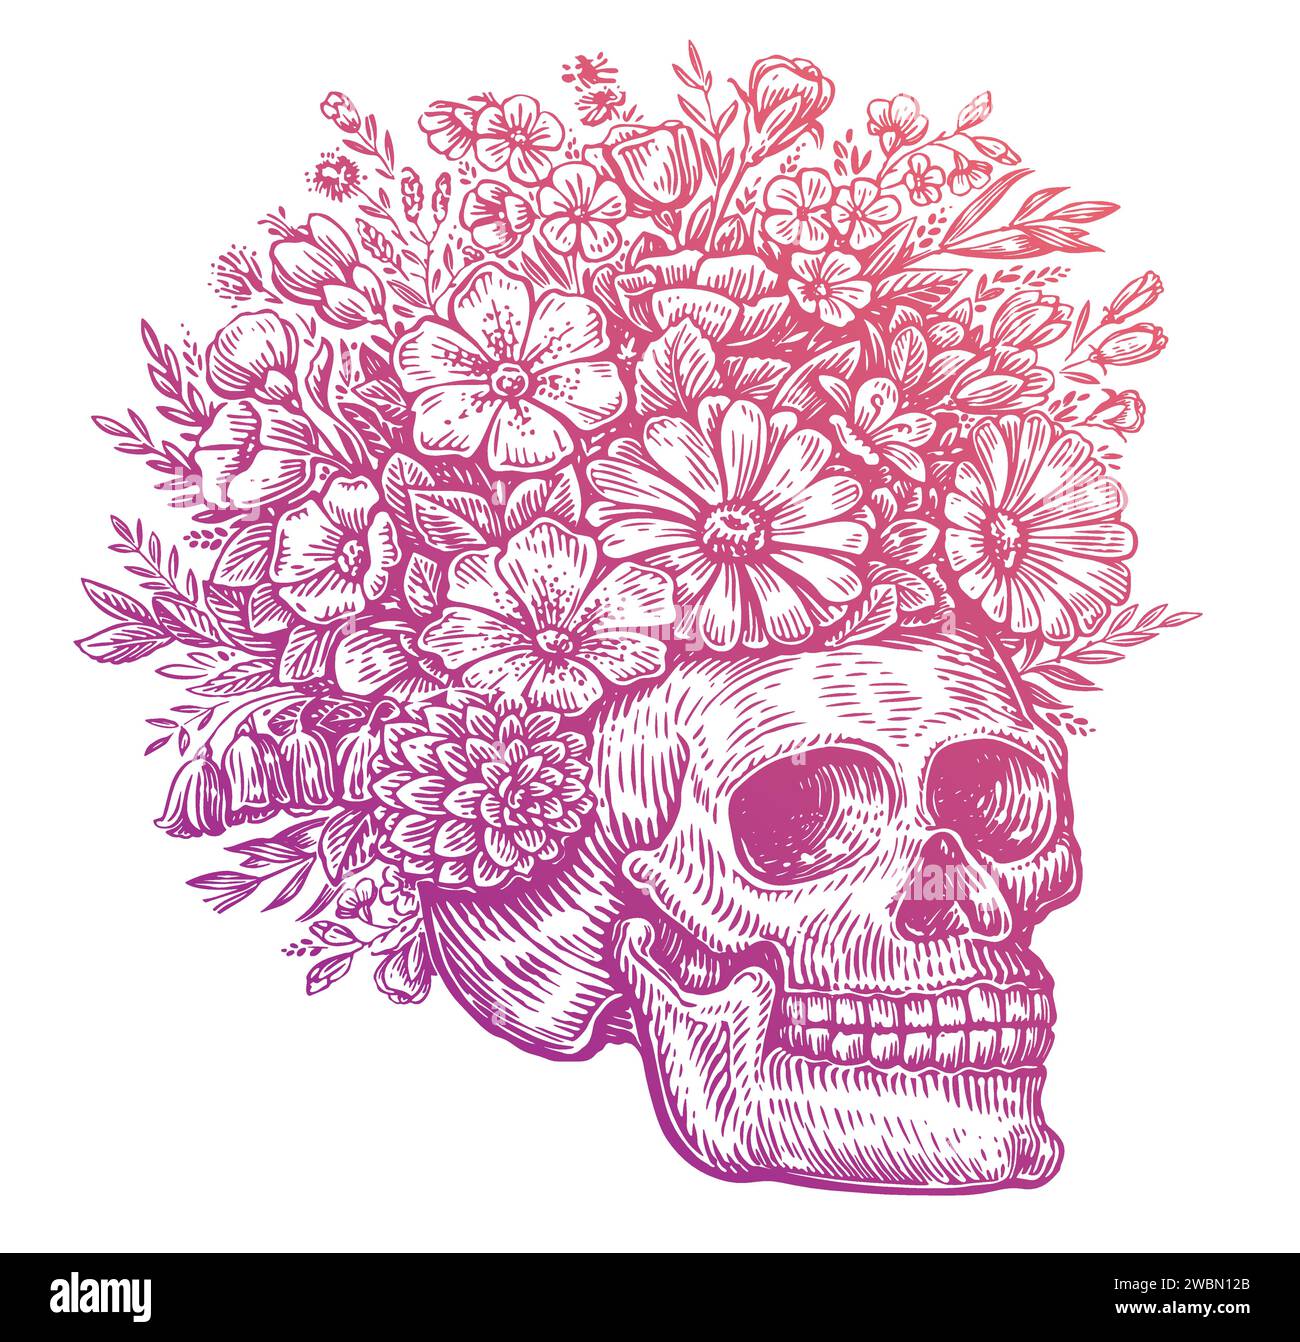 Menschlicher Schädel mit Blumen. Handgezeichnete Vektorgrafik Stock Vektor